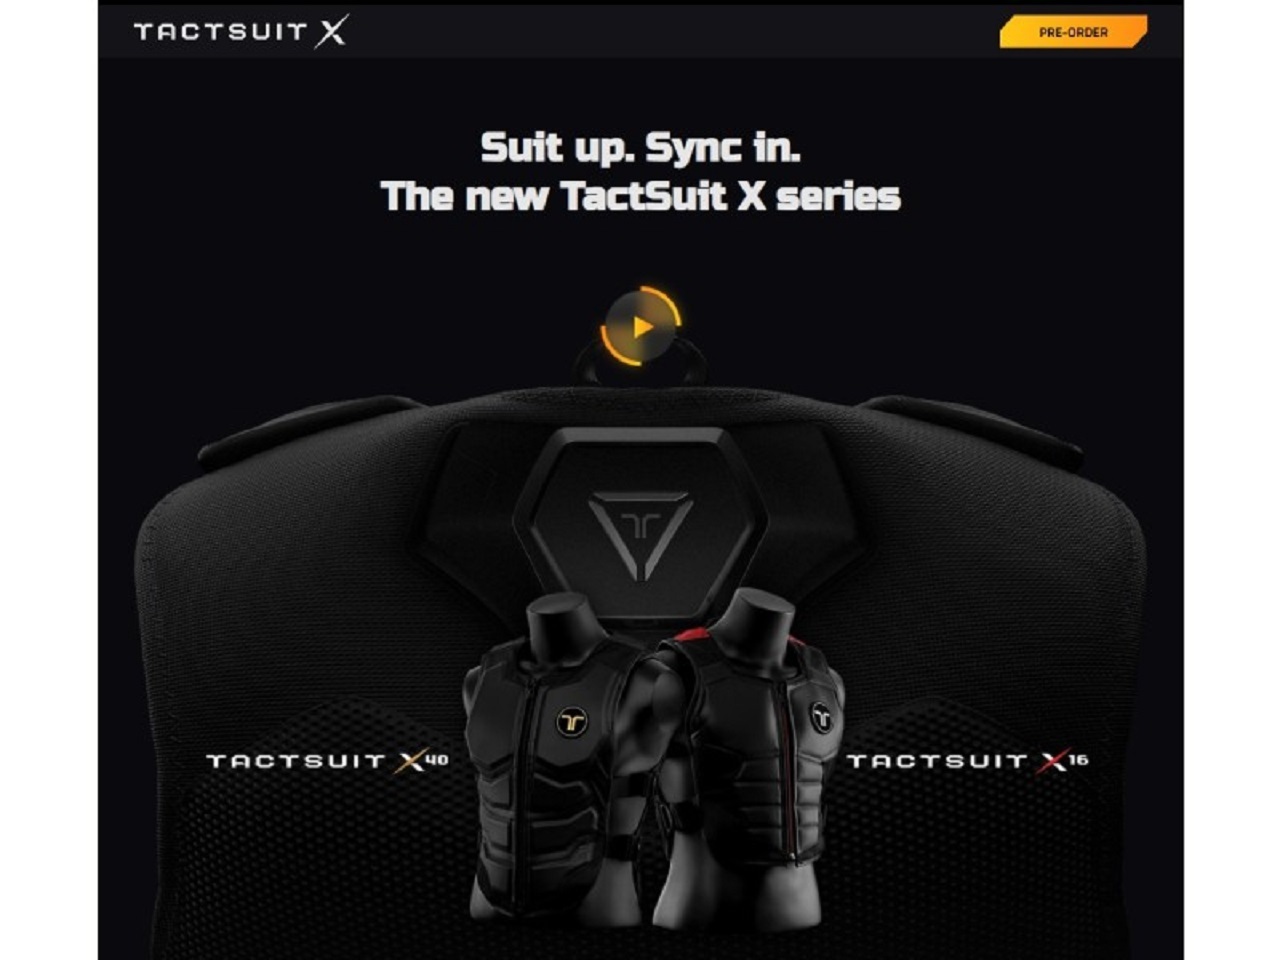 ゲーム用の触覚フィードバックVRベスト「TactSuit X16」が予約